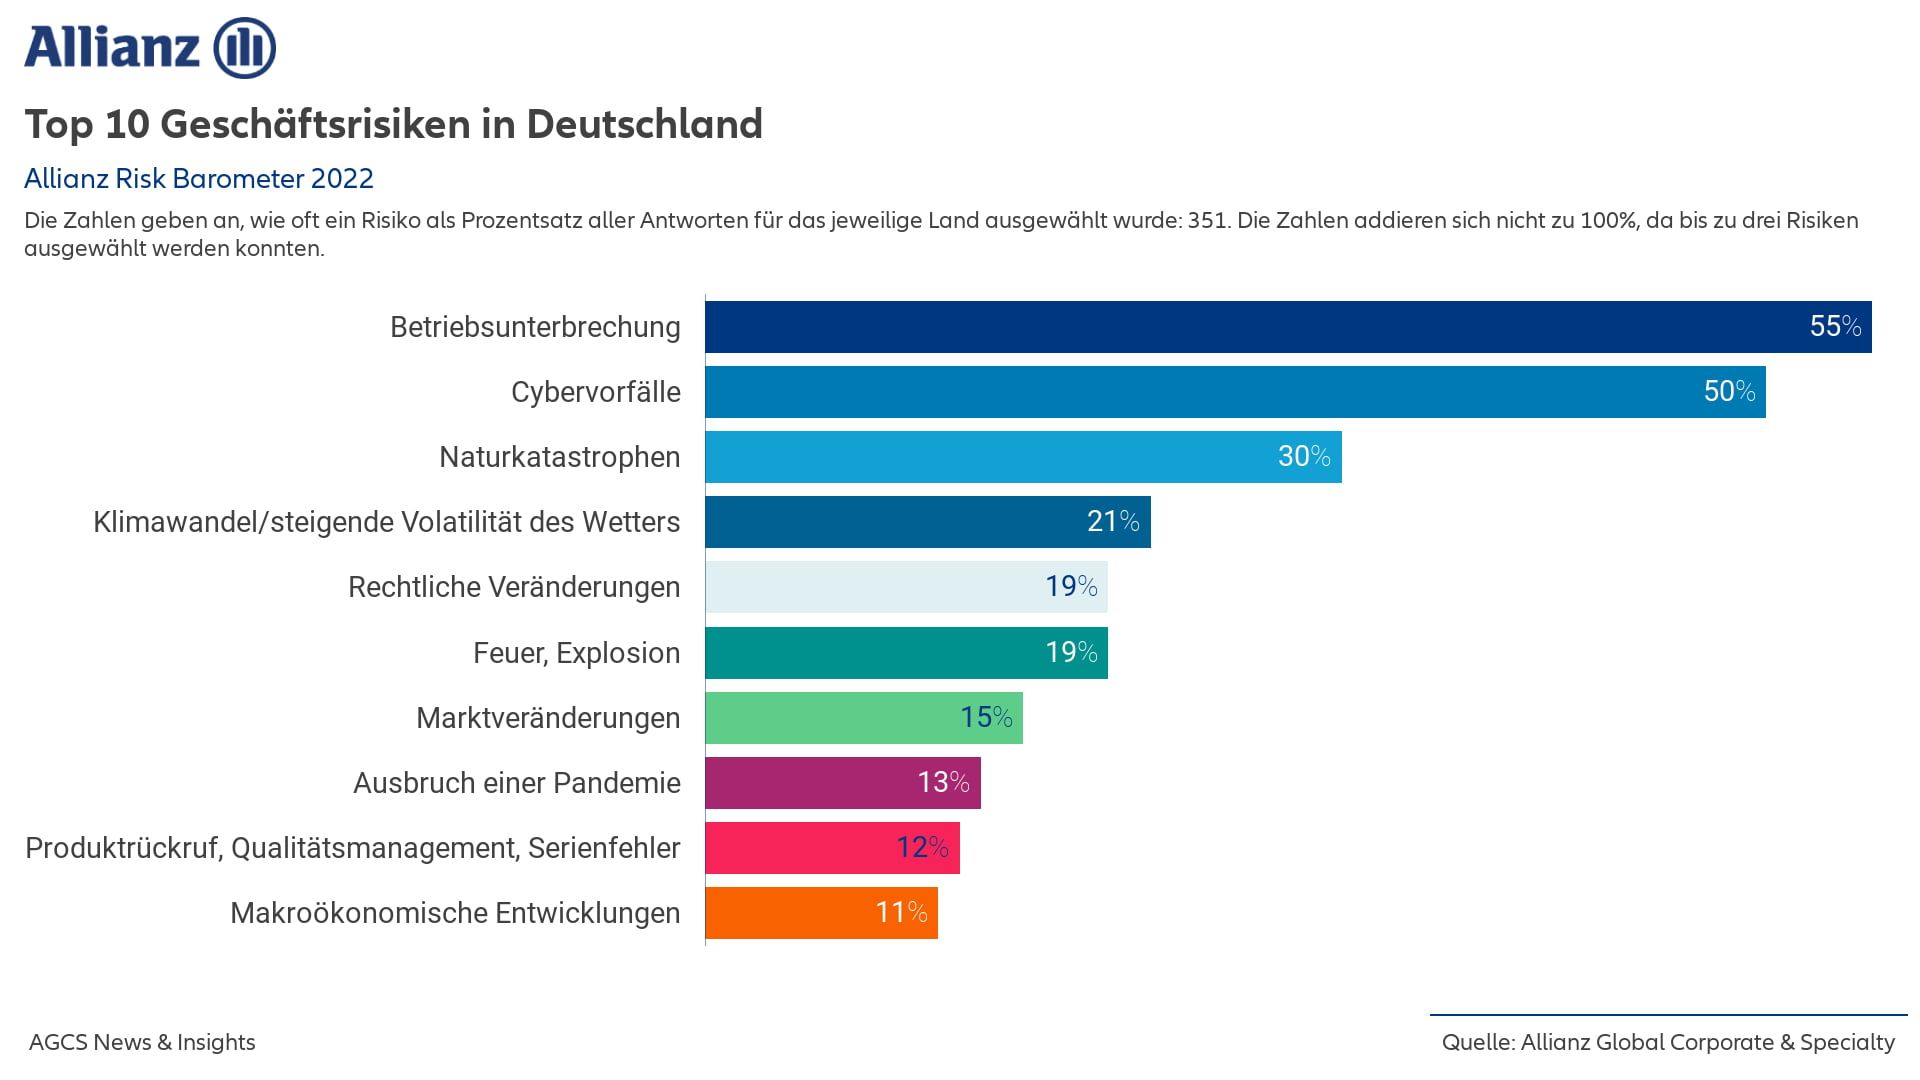 Top 10 Geschäftsrisiken in Deutschland